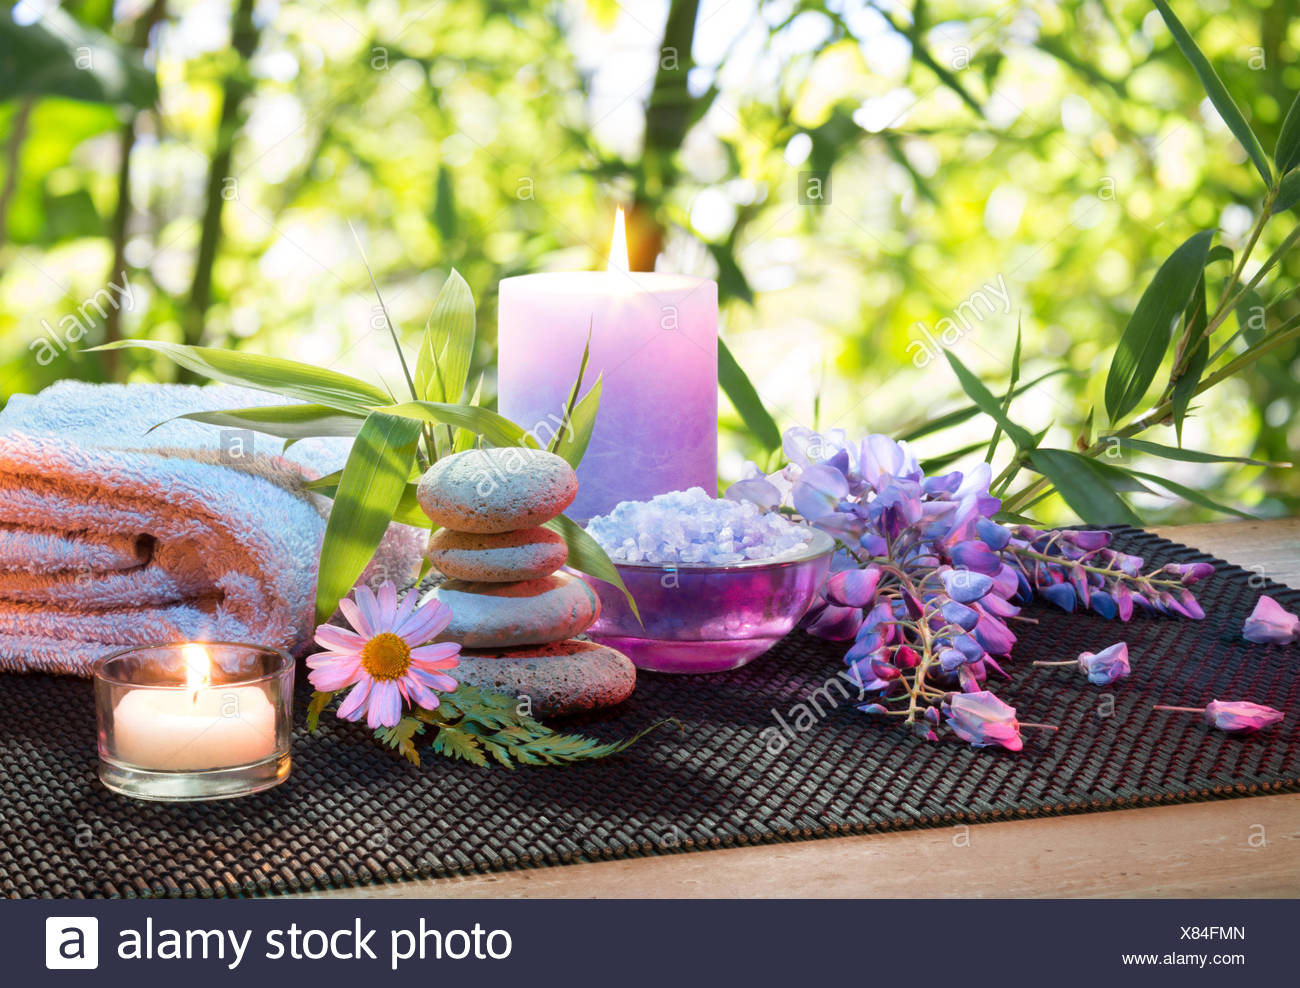 Fleur Plante Massage Bambou Spa Bains Medicinaux Spring Spring Tour Bien Etre Zen Relaxation Sante Culture Feuilles Photo Stock Alamy